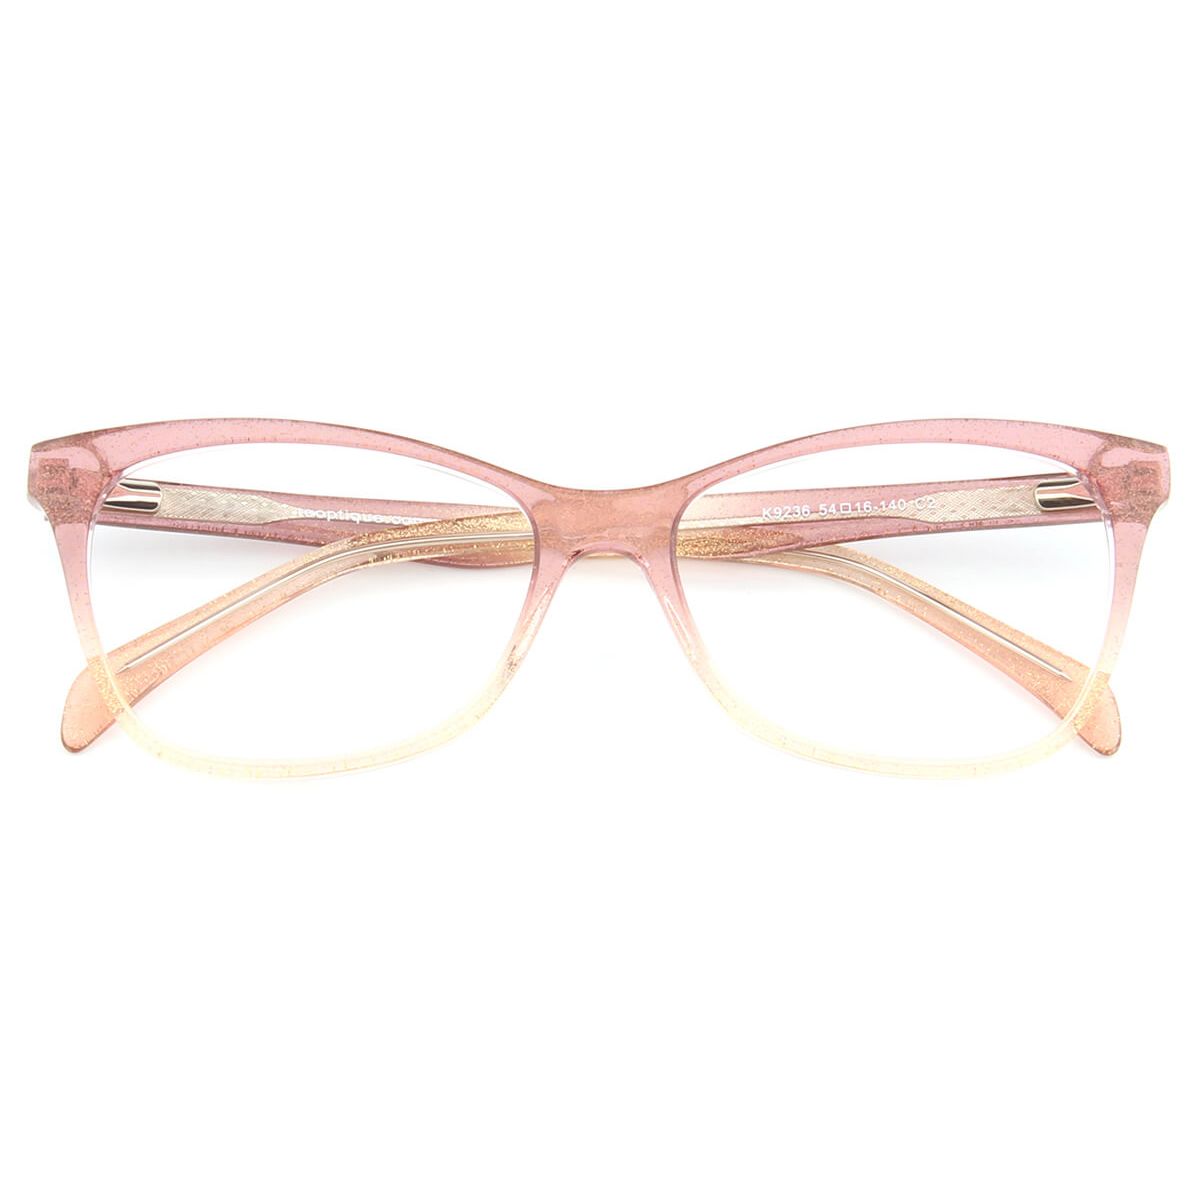 K9236 Oval Wayfarer Pink Eyeglasses Frames | Leoptique